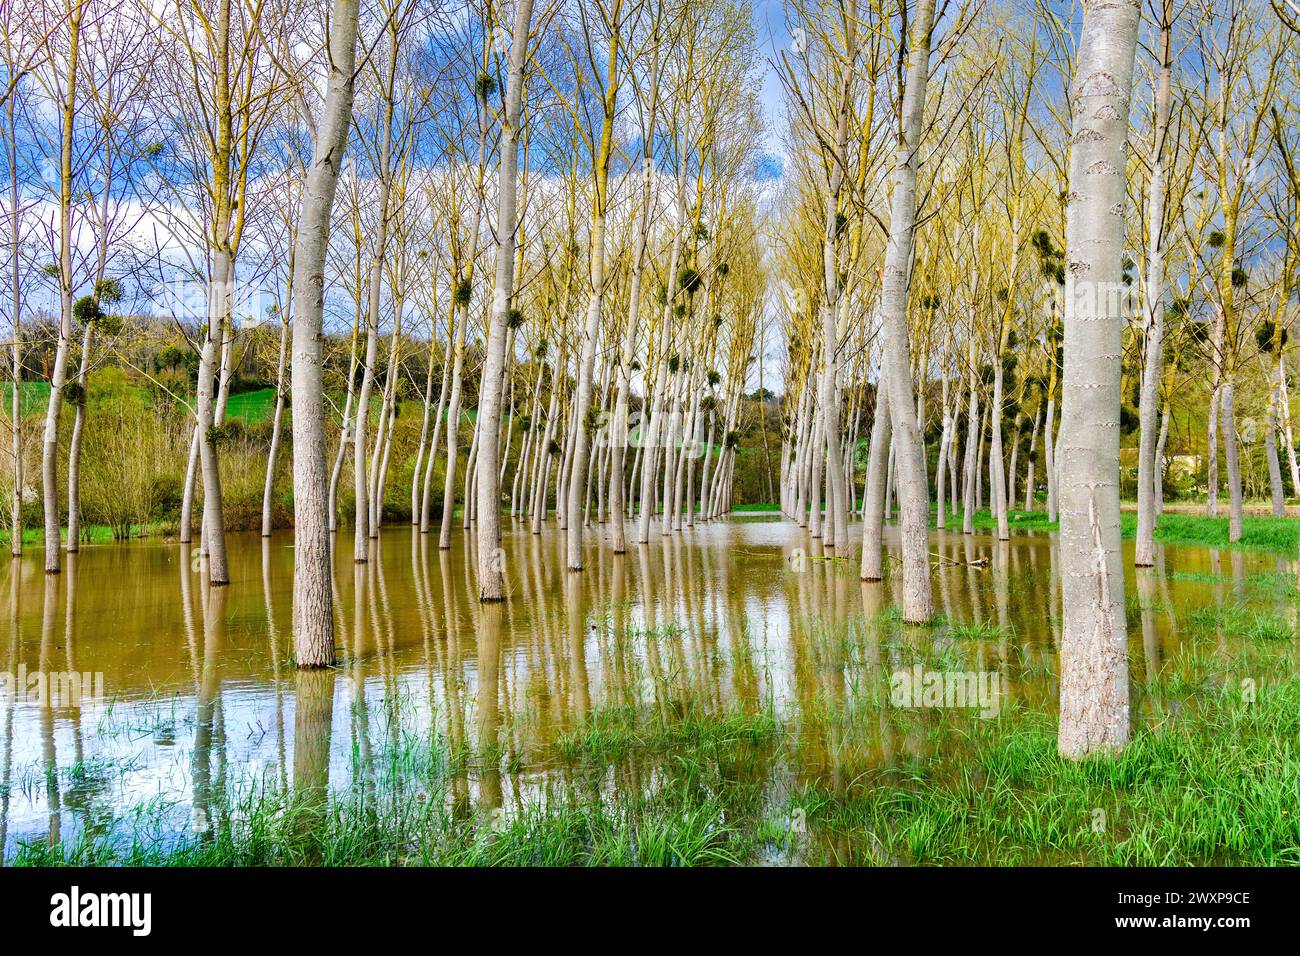 Stand commerciale di alberi di pioppo (Peuplier) circondati da acque alluvionali dopo l'esplosione del fiume Claise, le sue sponde sono la Francia centrale. Foto Stock